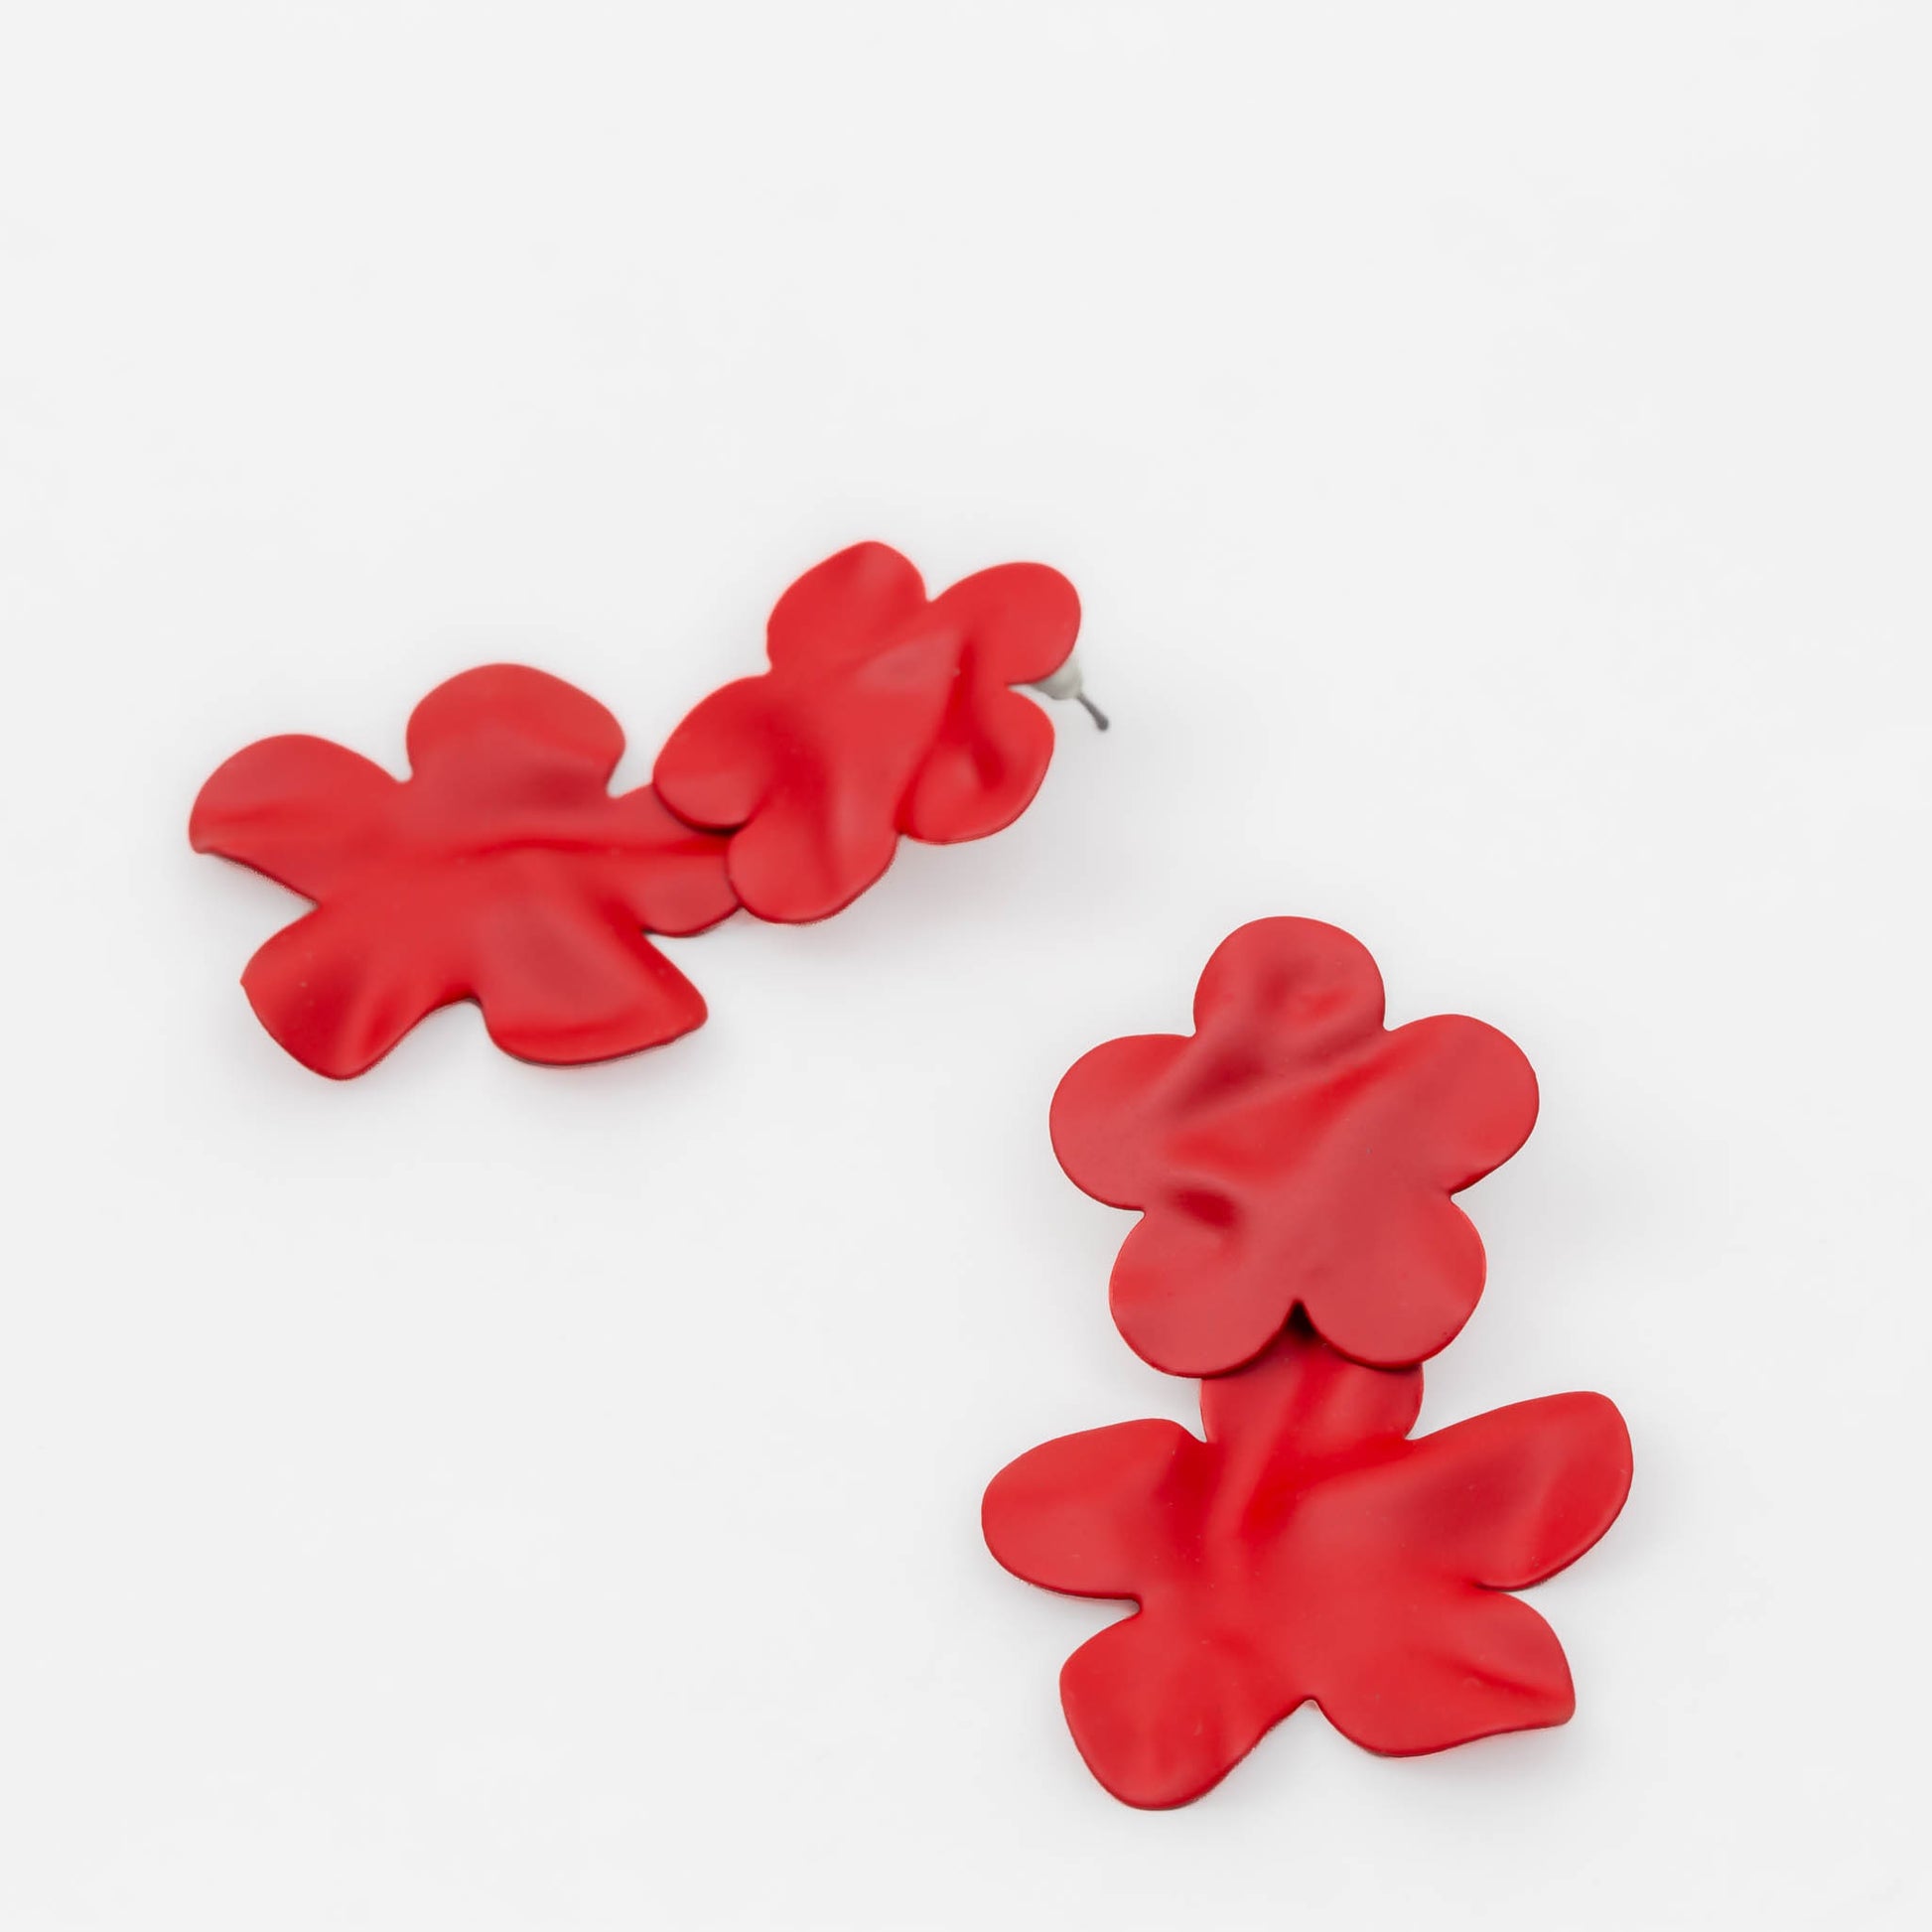 Cercei flower power cu textură de silicon - Roșu